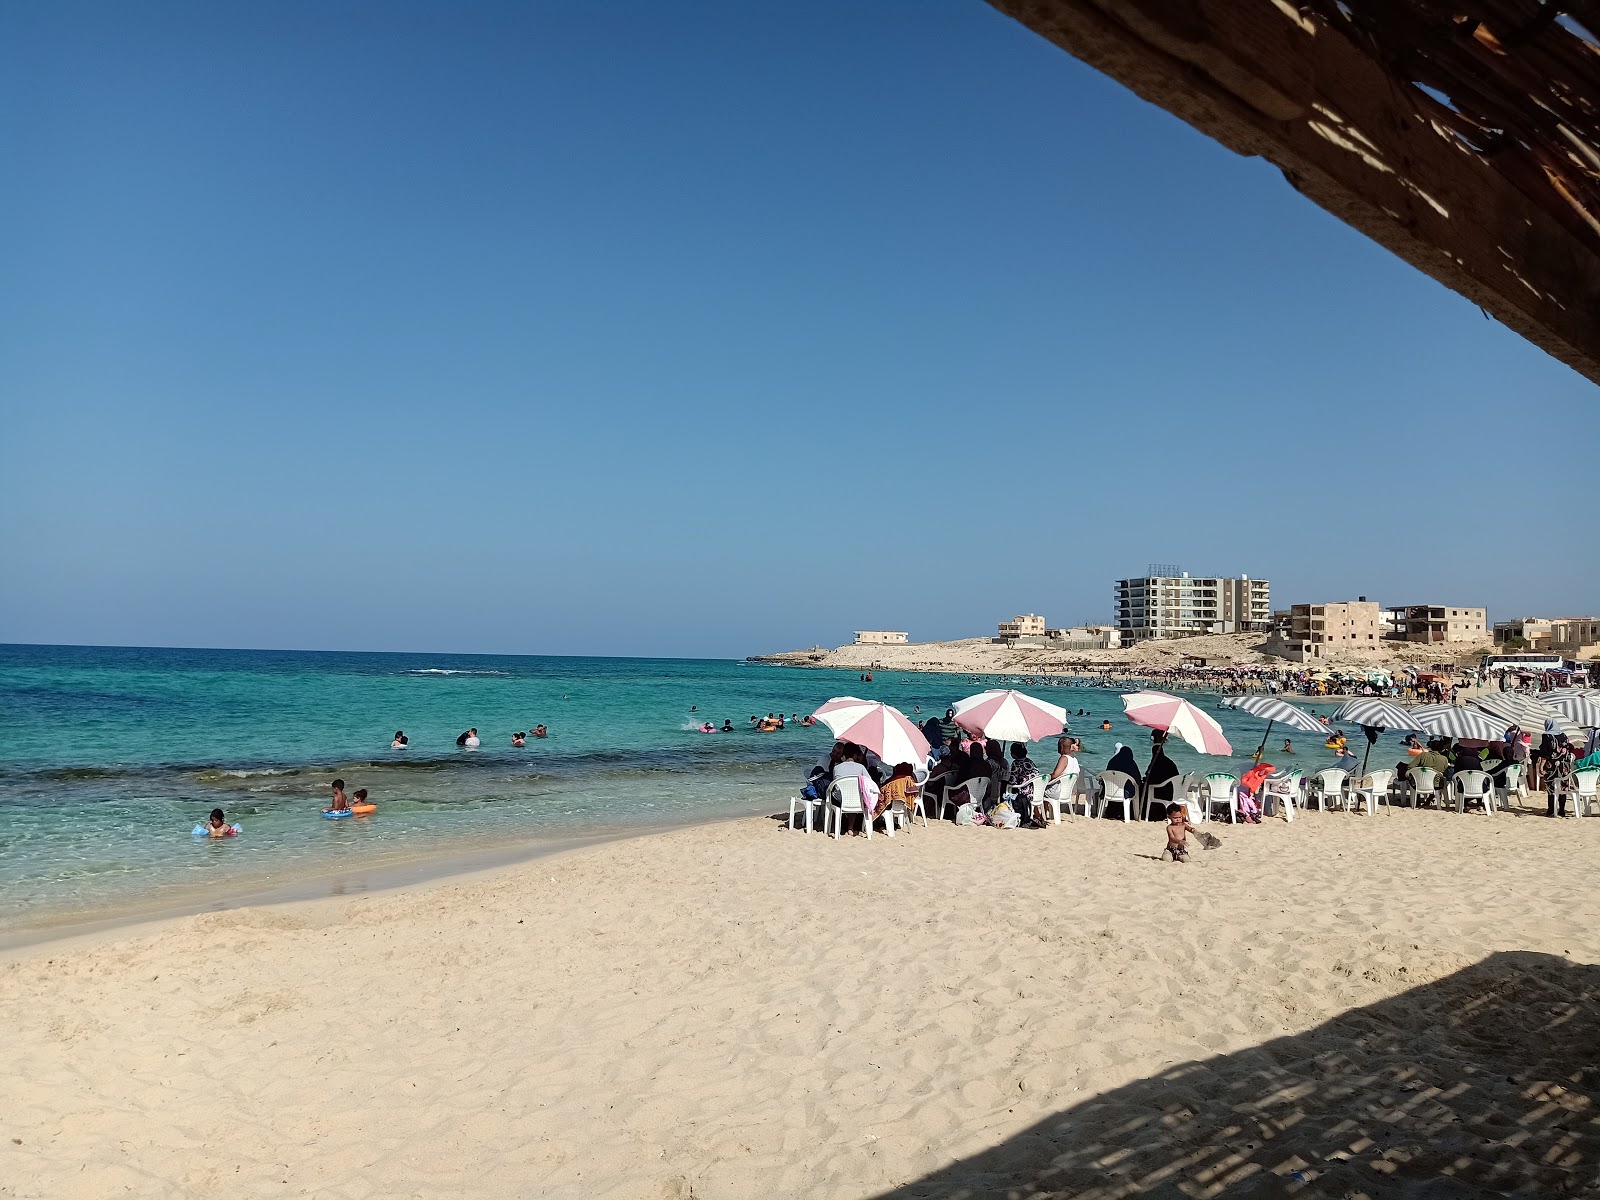 Foto af Minaa Alhasheesh beach - populært sted blandt afslapningskendere